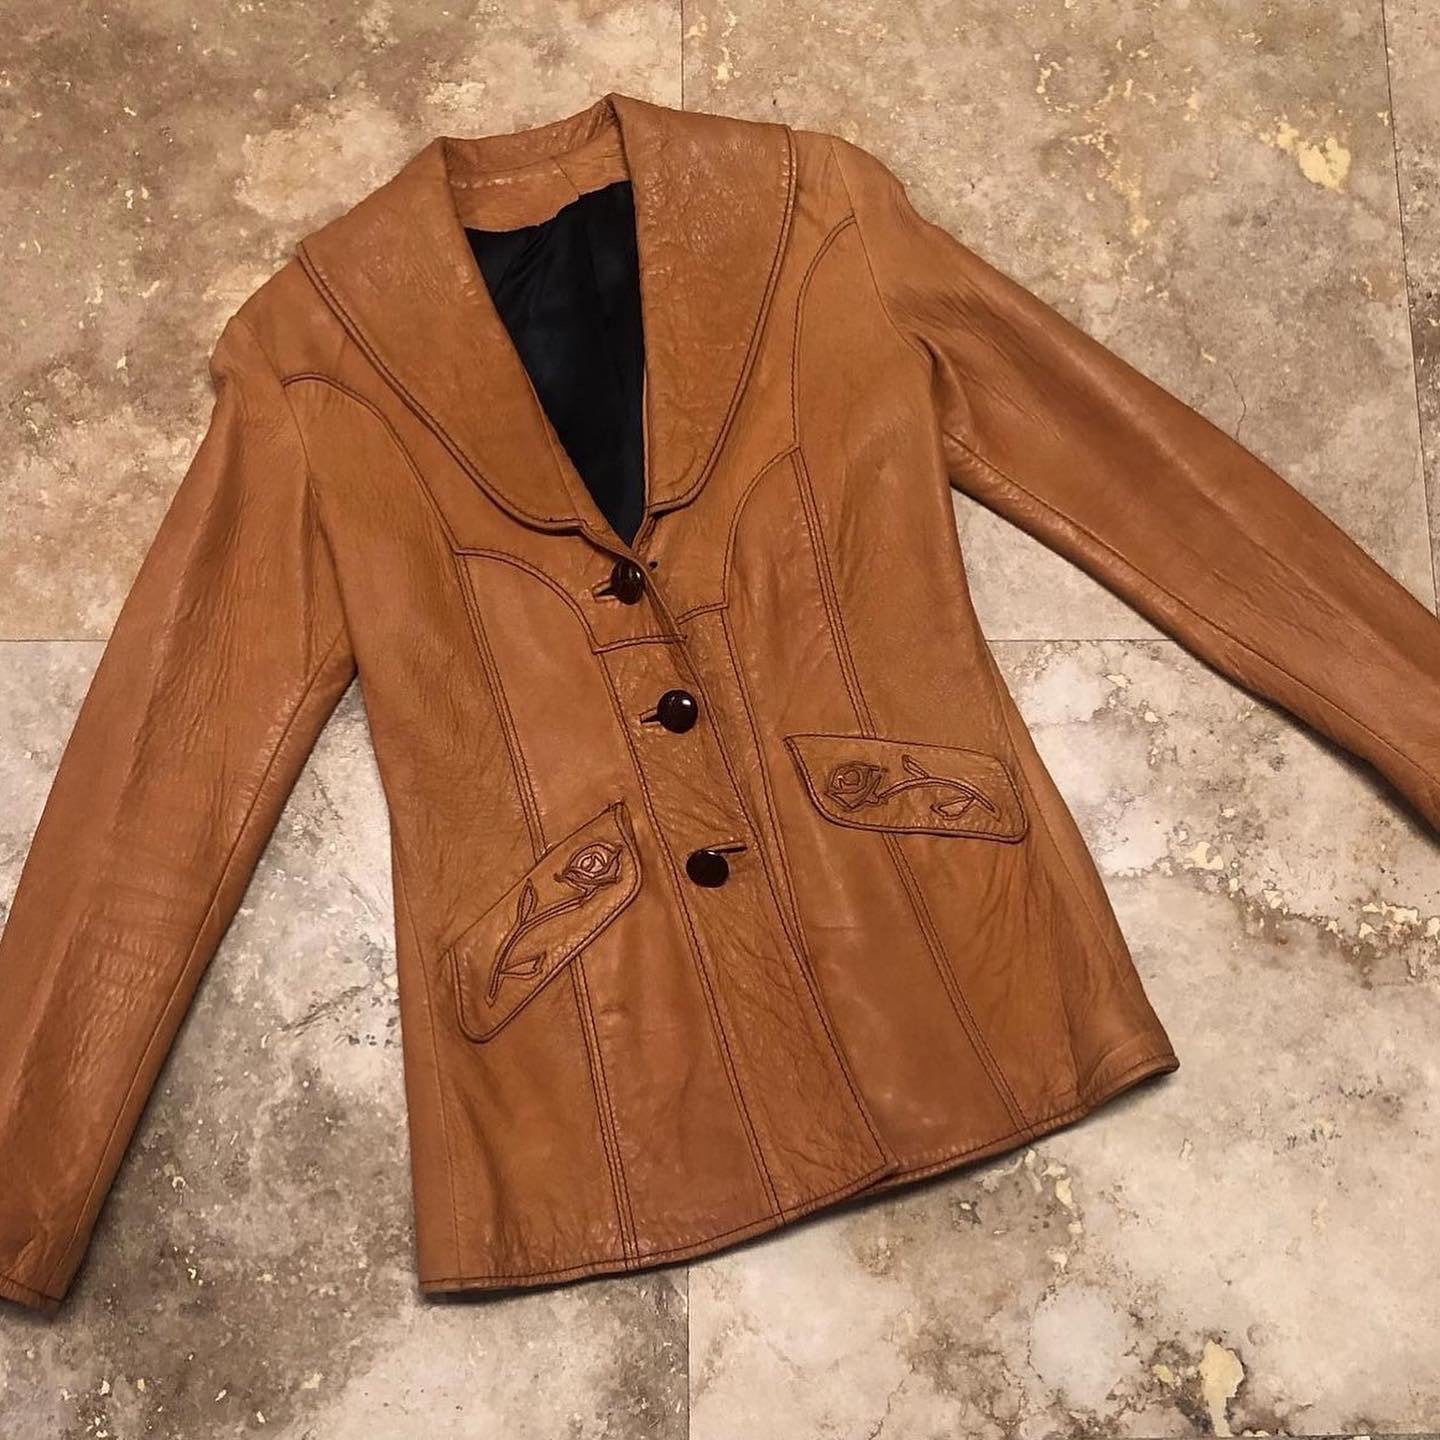 Inc Leather Jacket - Etsy